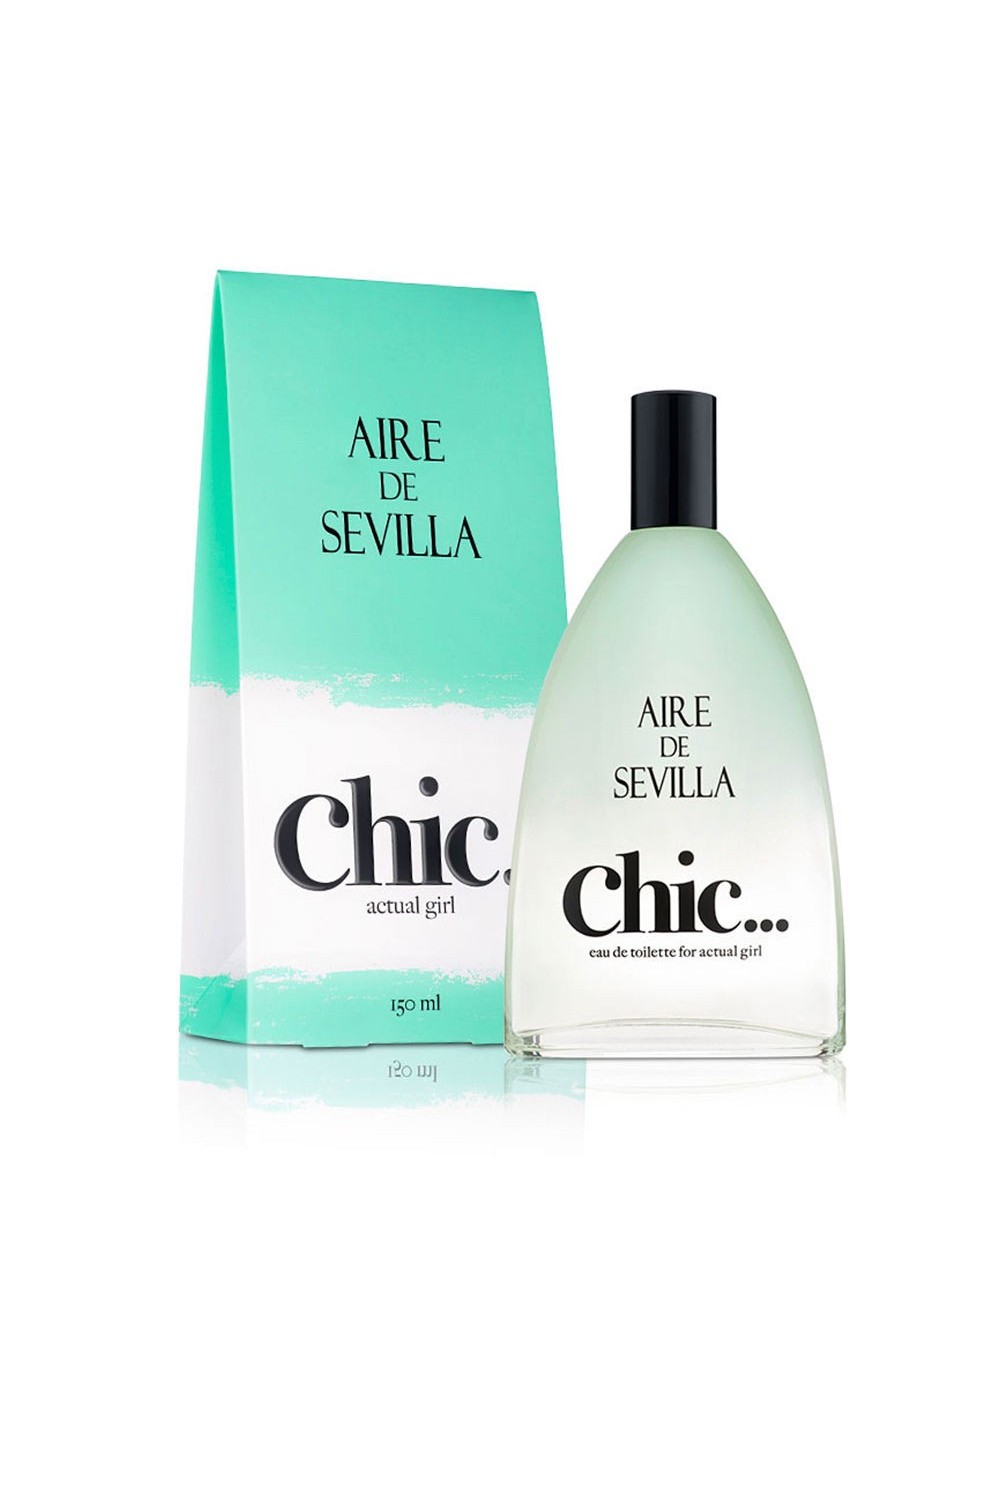 Aire De Sevilla Chic… Edt Spray 150ml